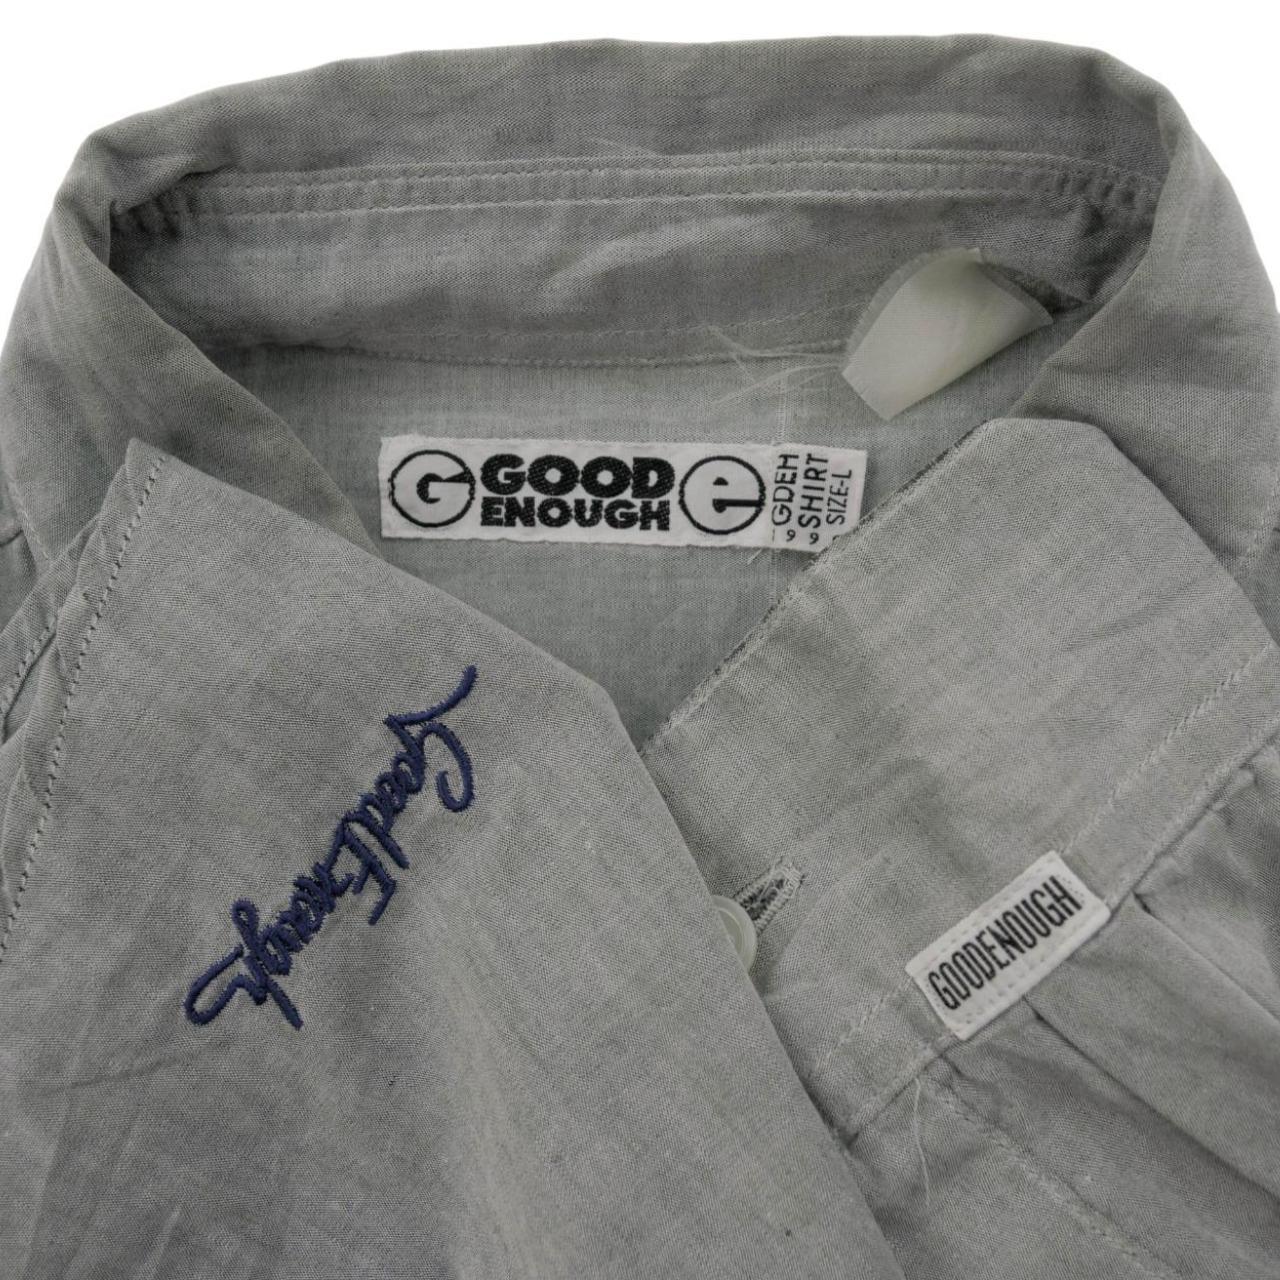 Vintage Good Enough Button Up Shirt Size L - Known Source